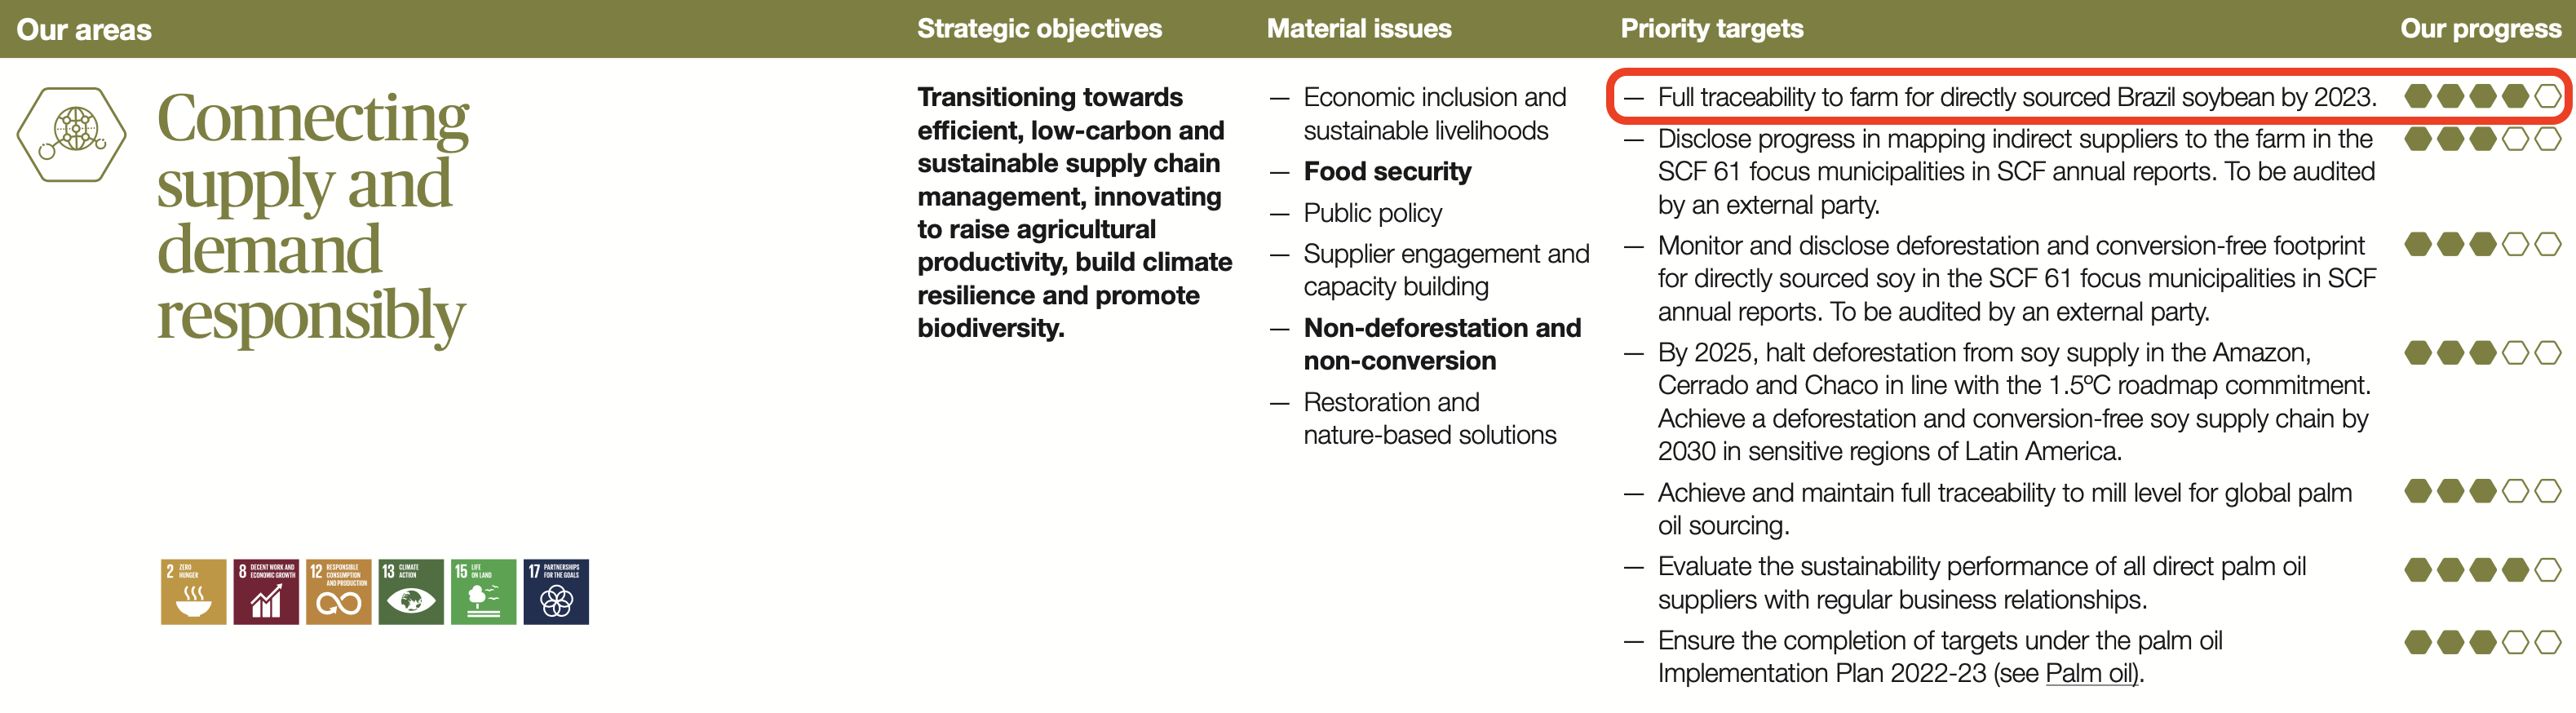 Cópia das páginas 18 e 19 do relatório de sustentabilidade de 2022